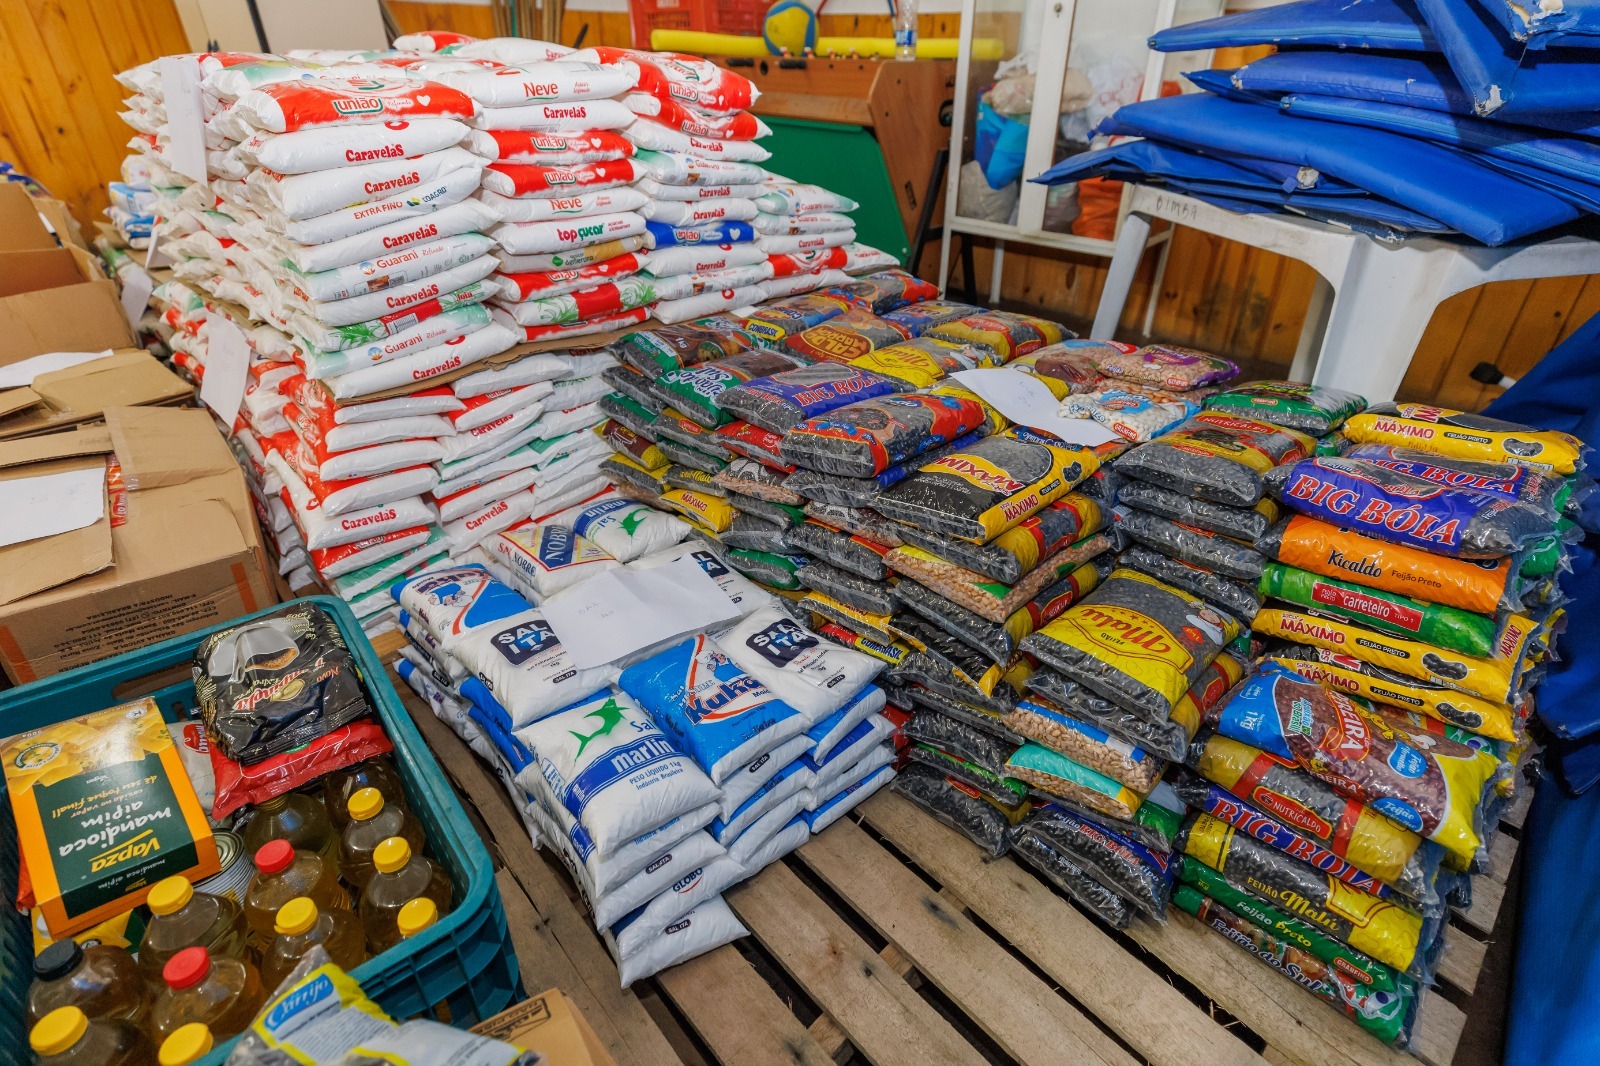 Você está visualizando atualmente ‘Teresópolis abraça RS’: quase 4 toneladas de alimentos foram arrecadados para ajudar as vítimas das enchentes no Rio Grande do Sul